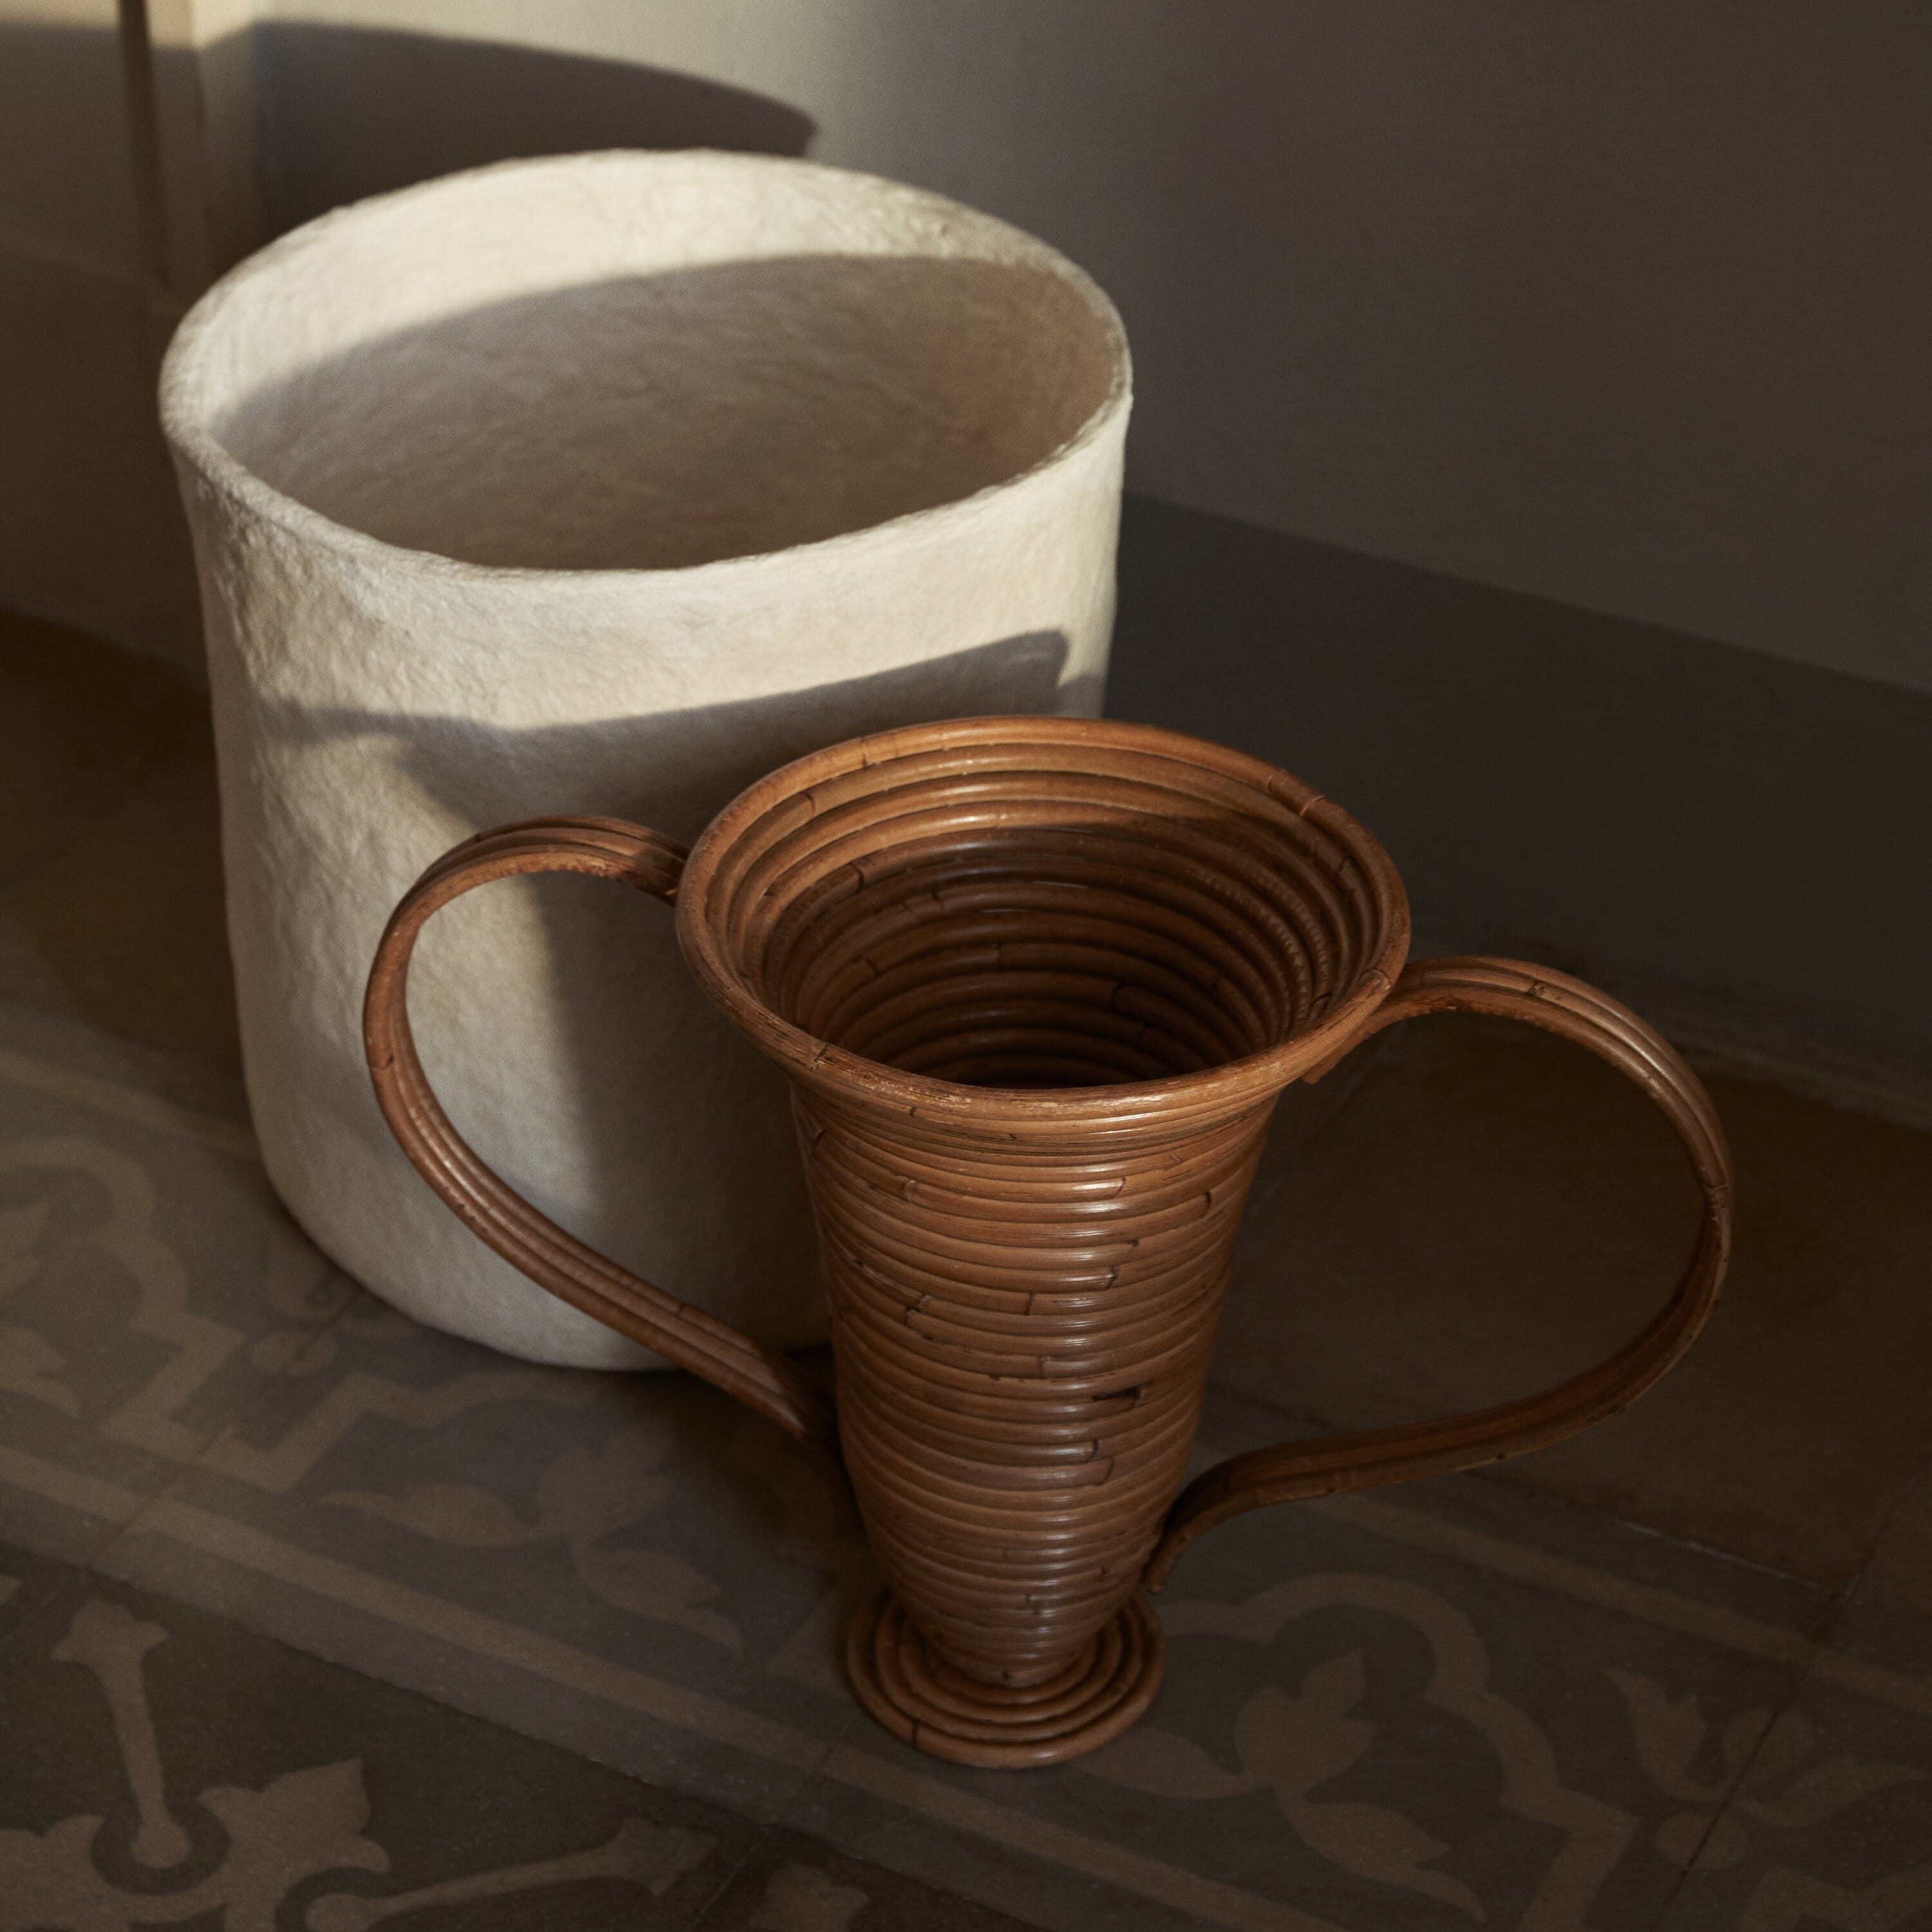 Bilde av Ferm Living - Ferm Living Amphora Vase Natural Stained S - Lunehjem.no - Interiør På Nett